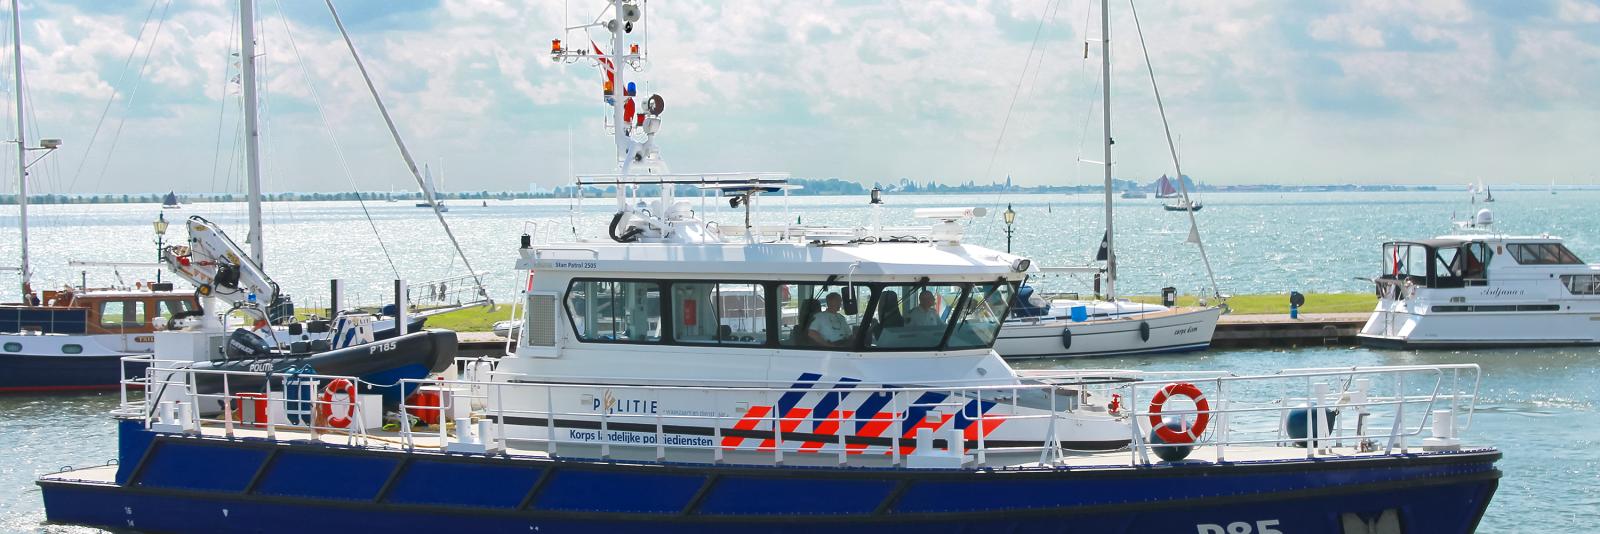 Riet Krankzinnigheid gebaar Waterpolitie legt eigen boten weer aan de ketting: "Criminaliteit op water  krijgt vrij spel" - NH Nieuws